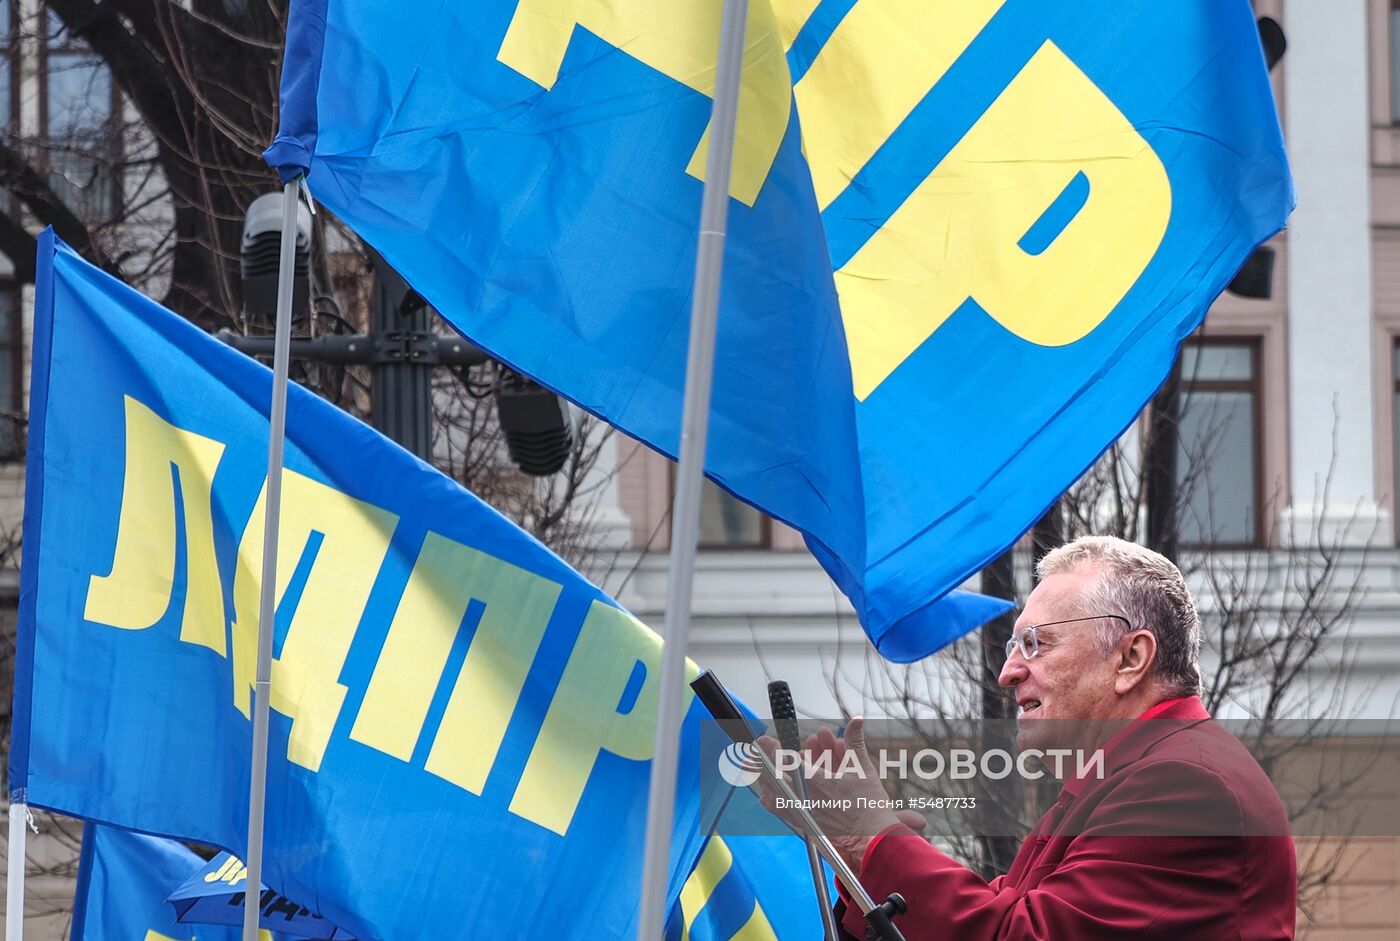 Митинг ЛДПР на Пушкинской площади